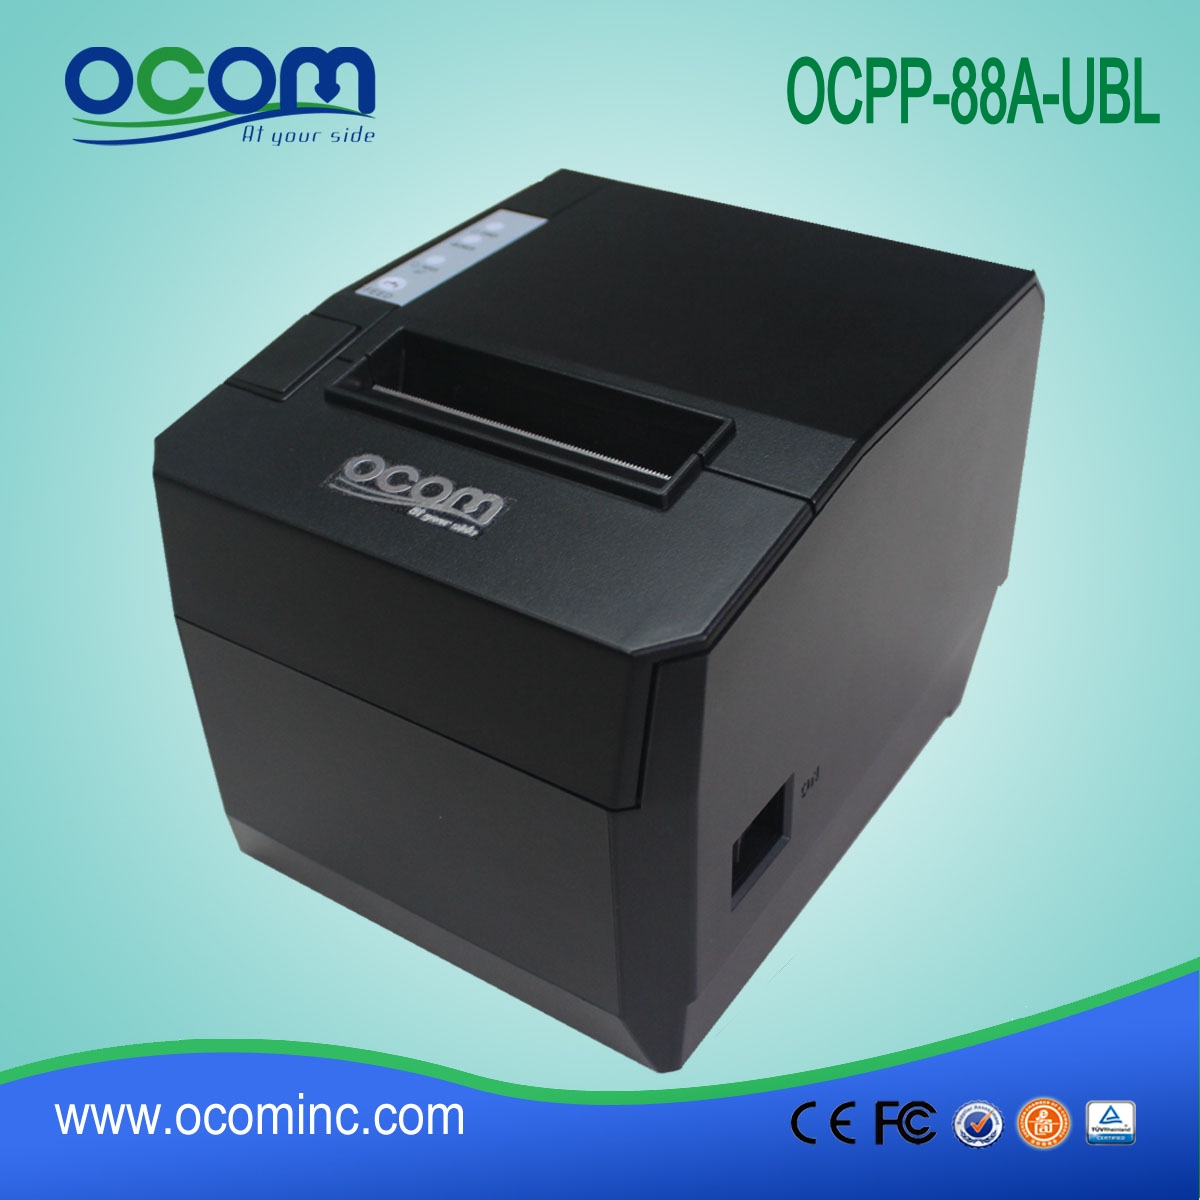 OCPP-88A 80mm Restaurant Thermal Receipt Bill Printer